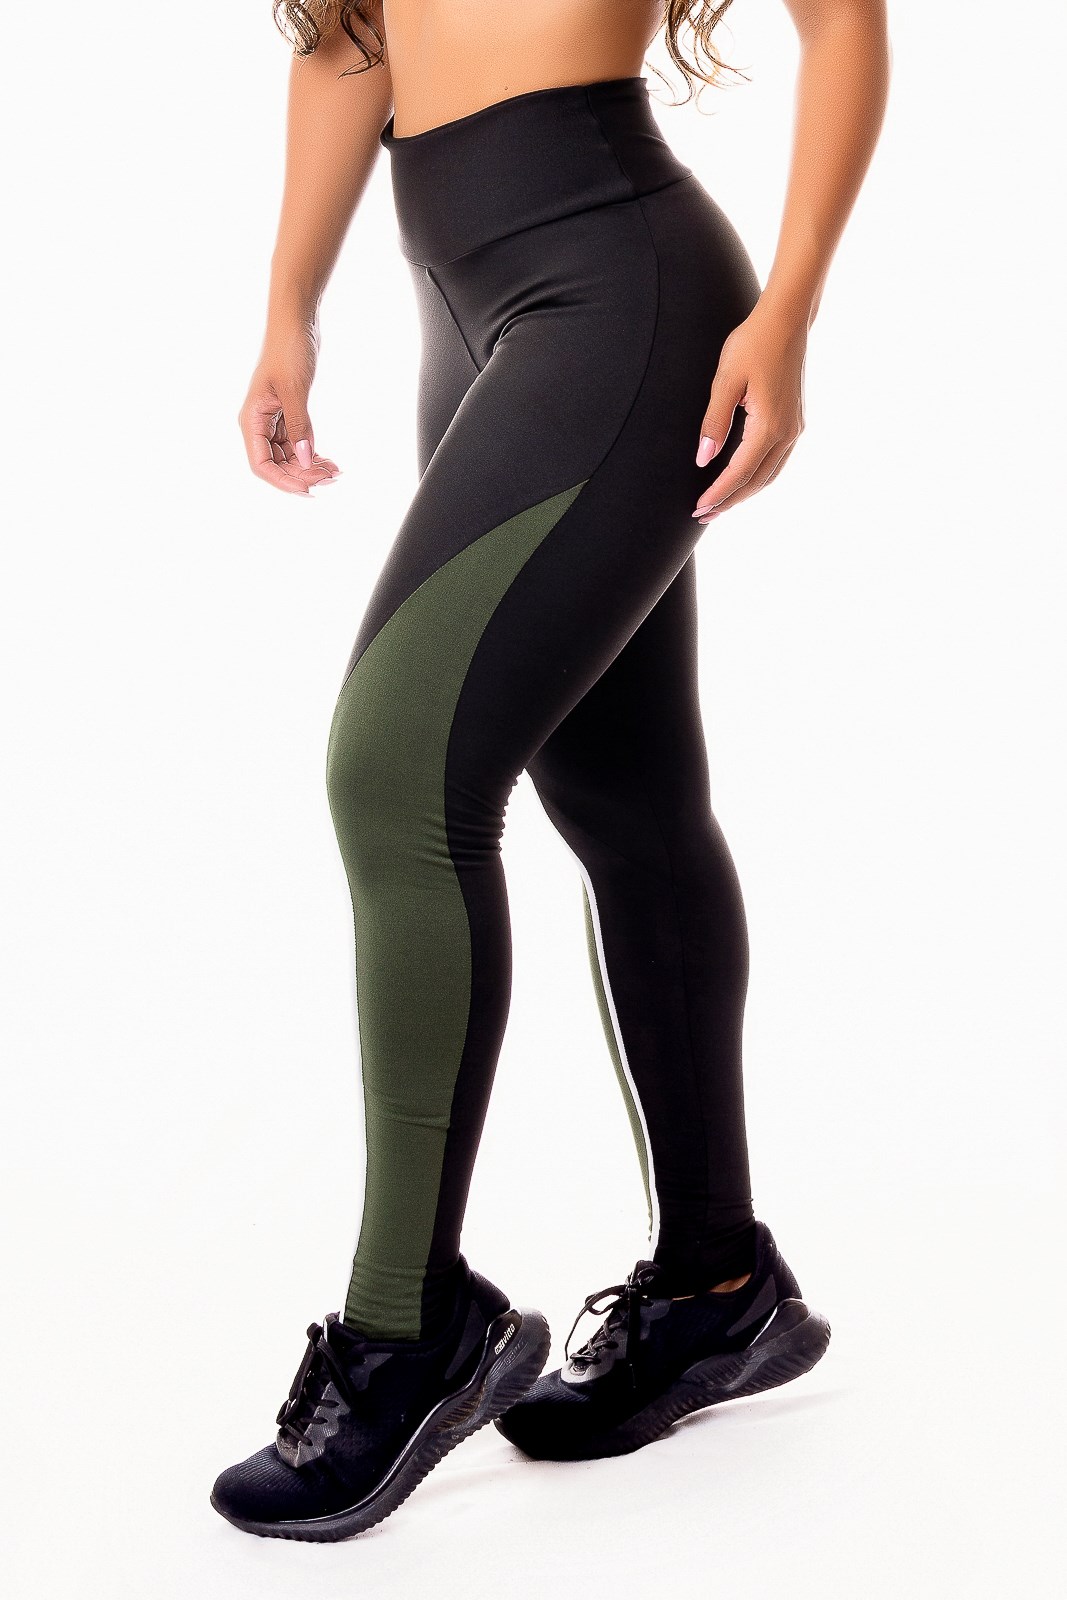 Calça Legging Fitness Academia Preta com Verde Militar e Vivo Branco  Cintura Alta REF: SV48 - Racy Modas